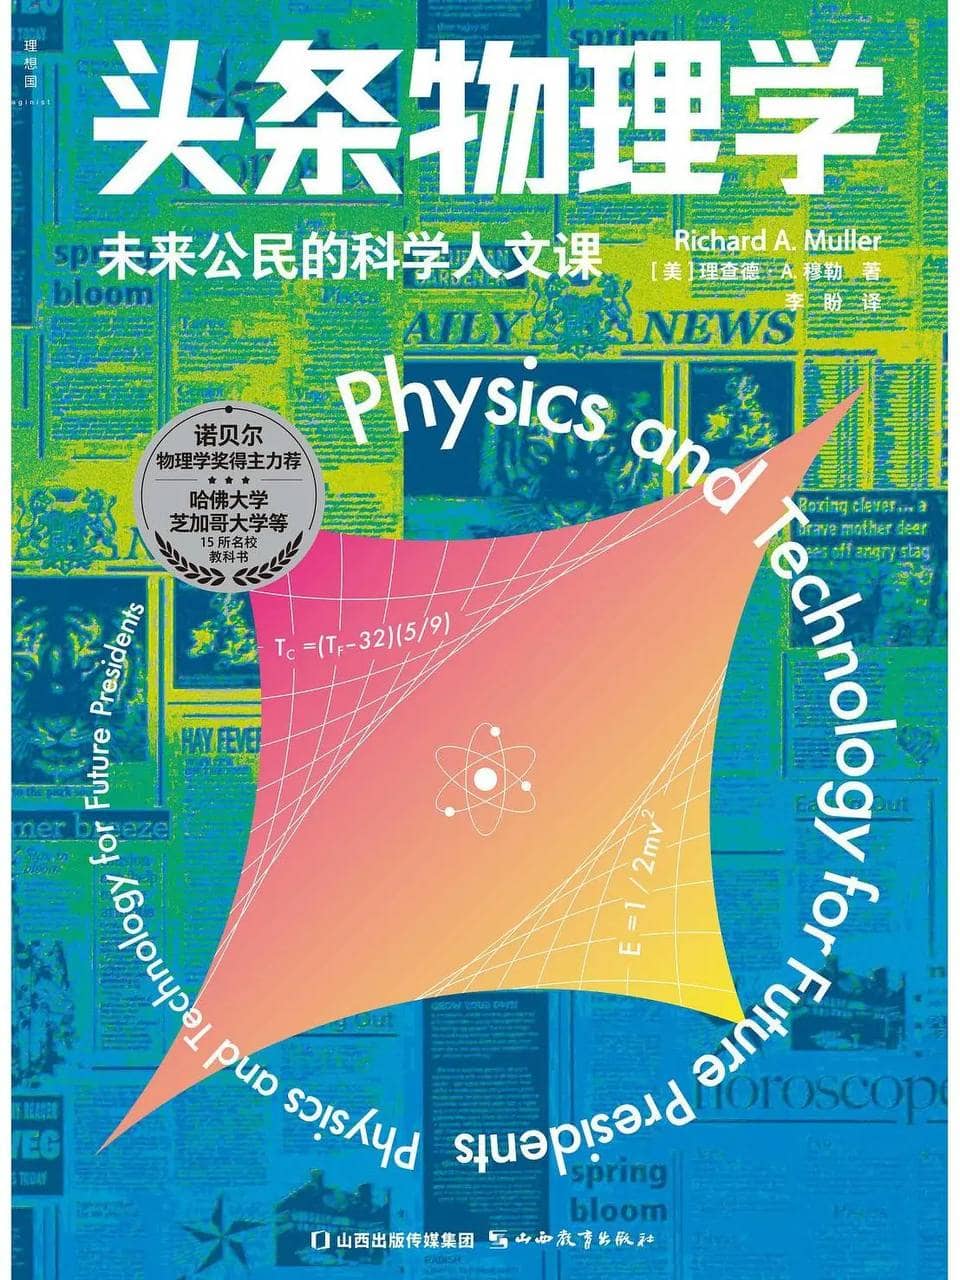 头条物理学 | 电子书籍